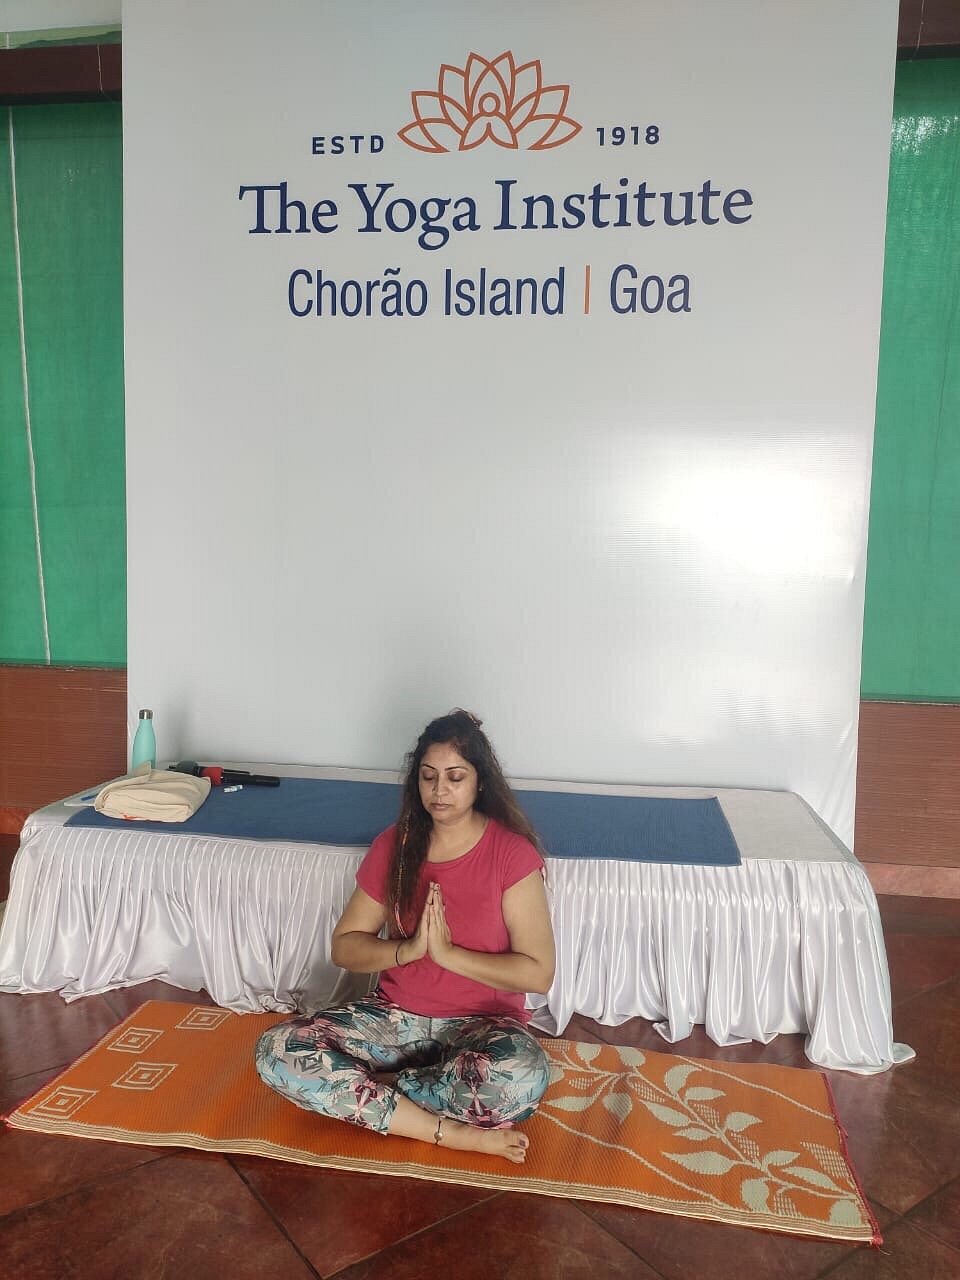 The Yoga Institute 